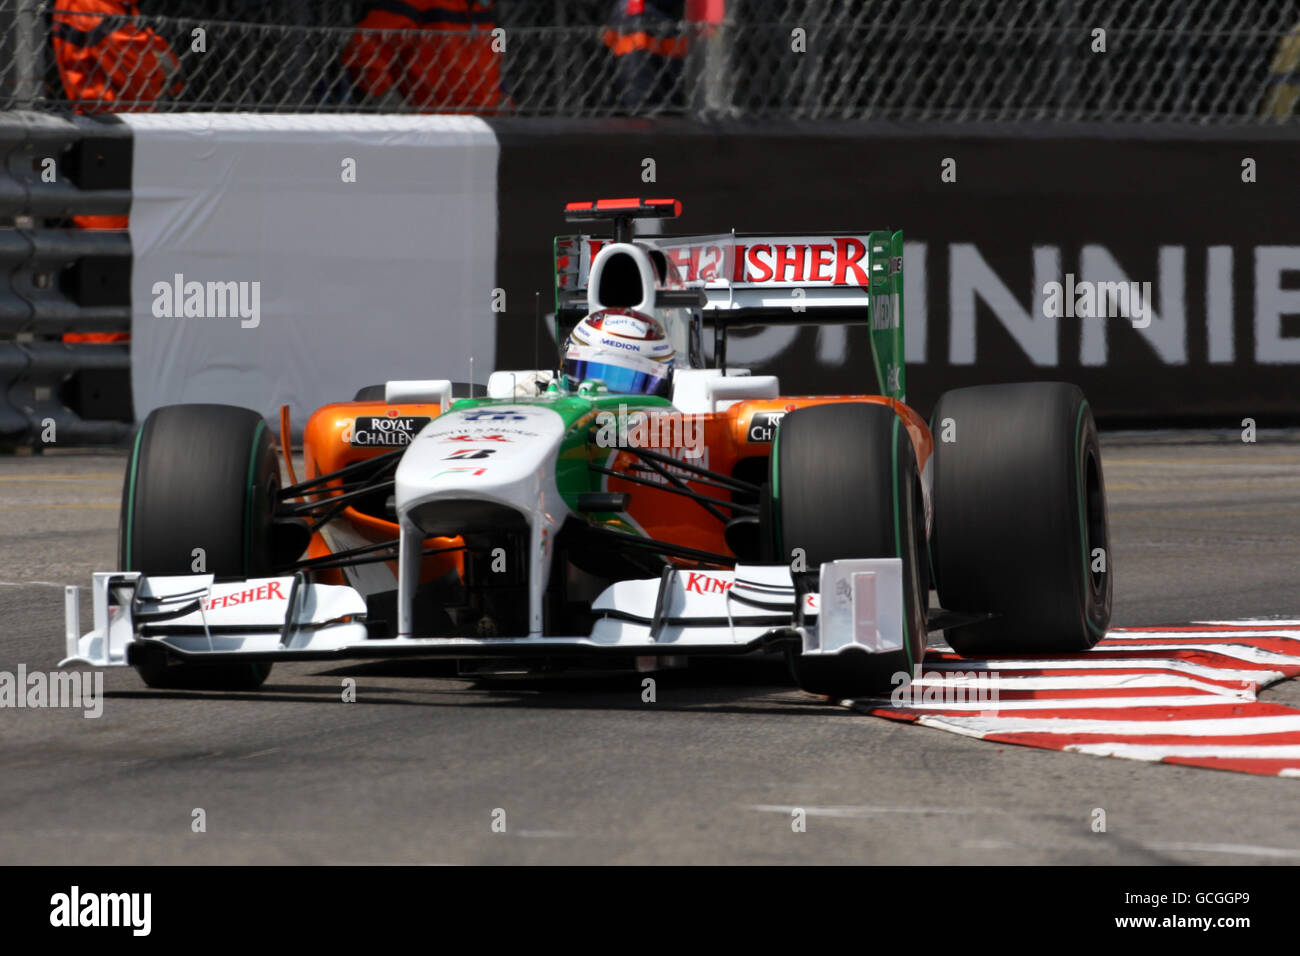 Formula uno Motor Racing - Gran Premio di Monaco - Practice e Qualifiche - circuito di Monaco. Adrian Sutil (GER), Force India. Foto Stock